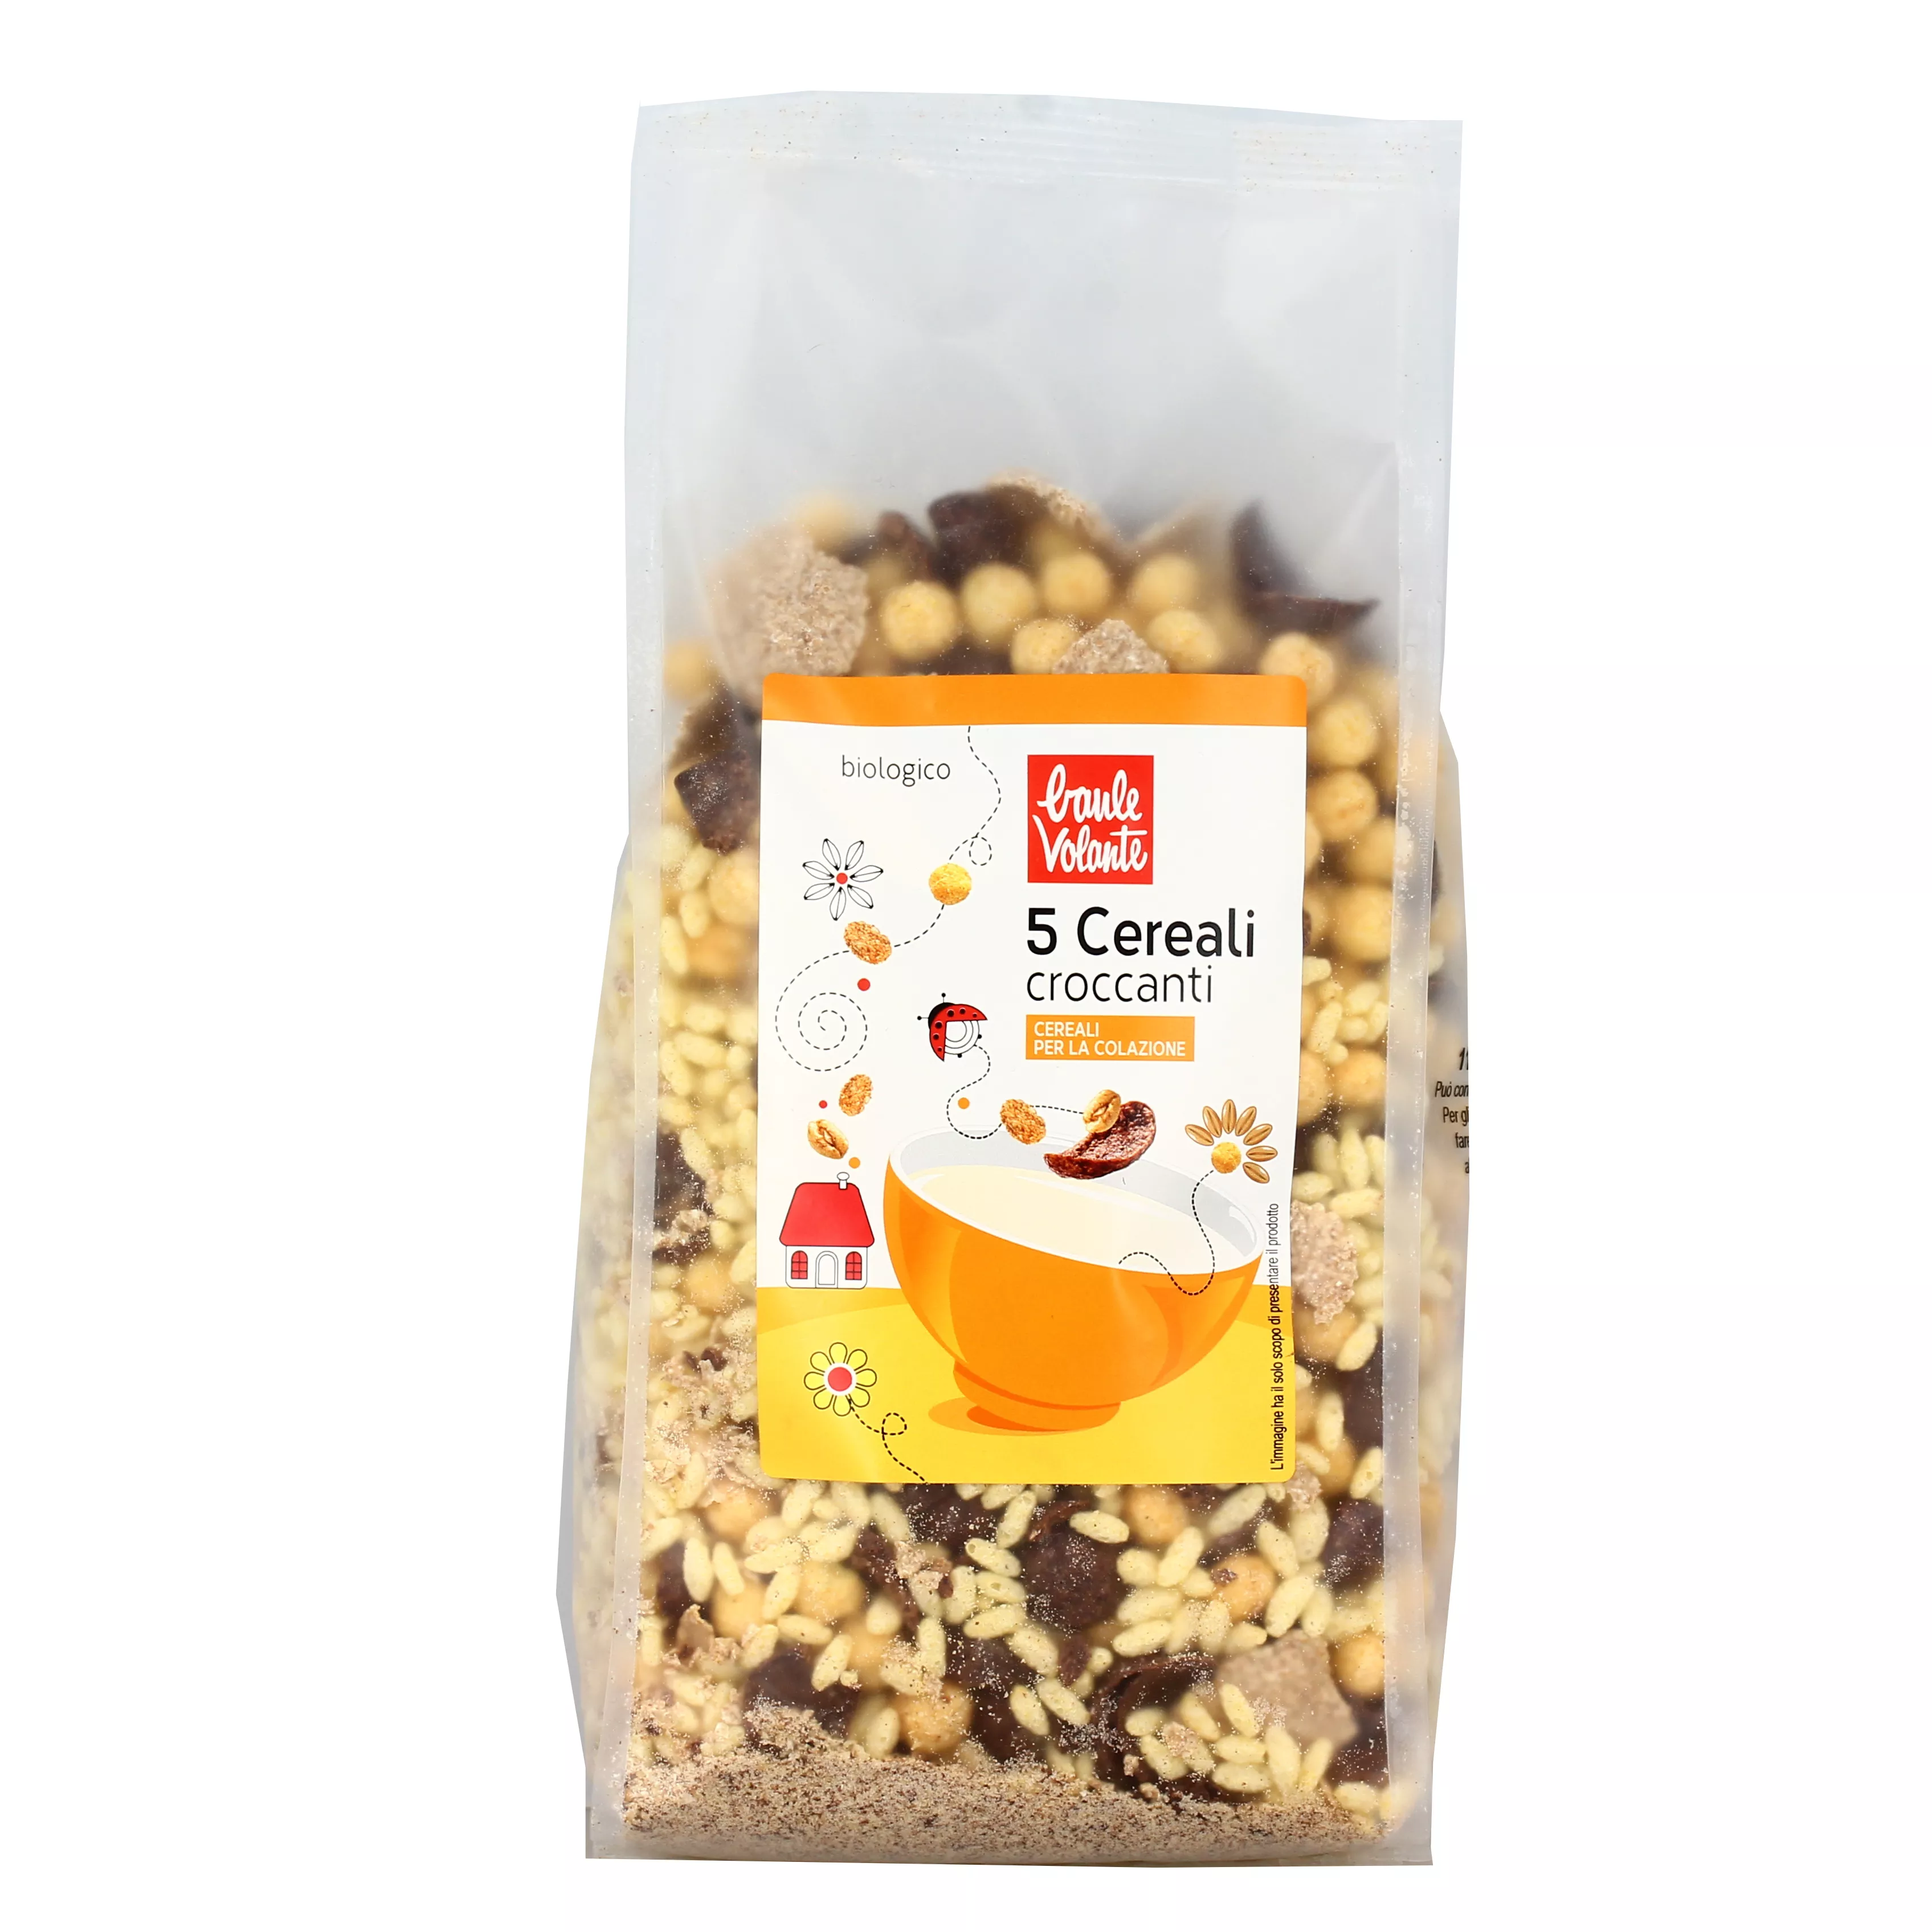 5 Cereali Croccanti per la Colazione Bio - Baule Volante